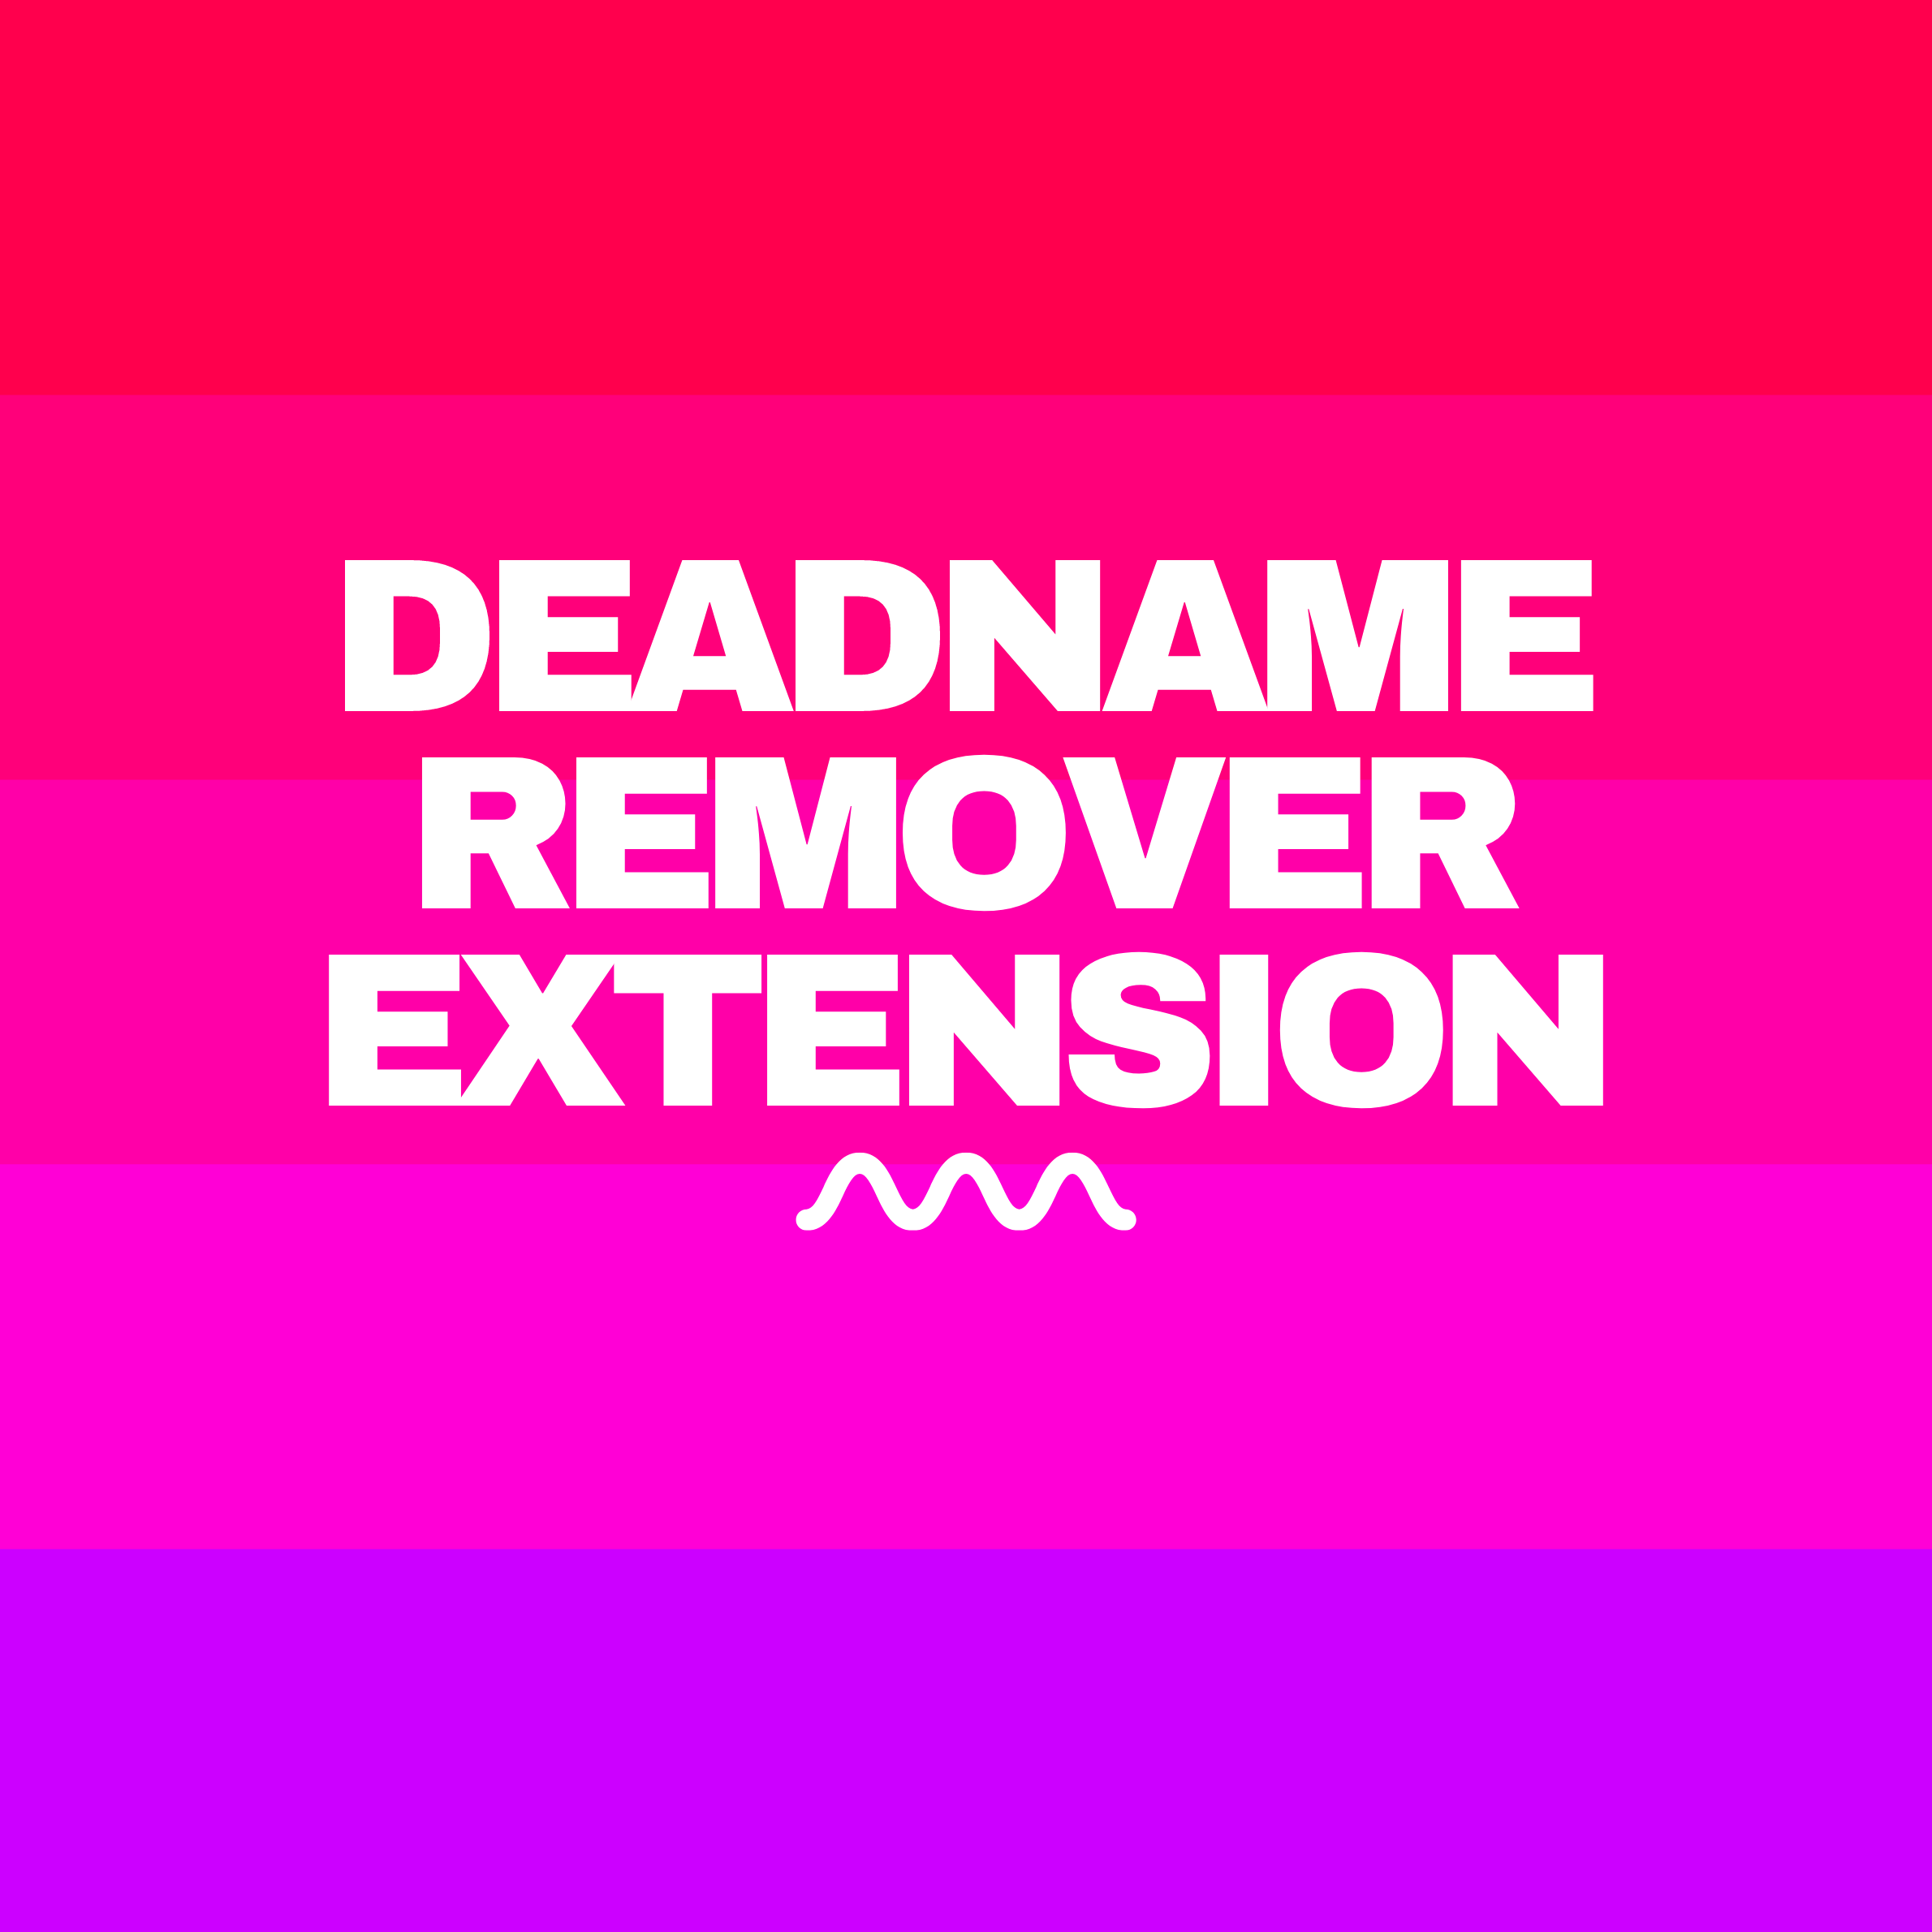 Deadname Remover Extension